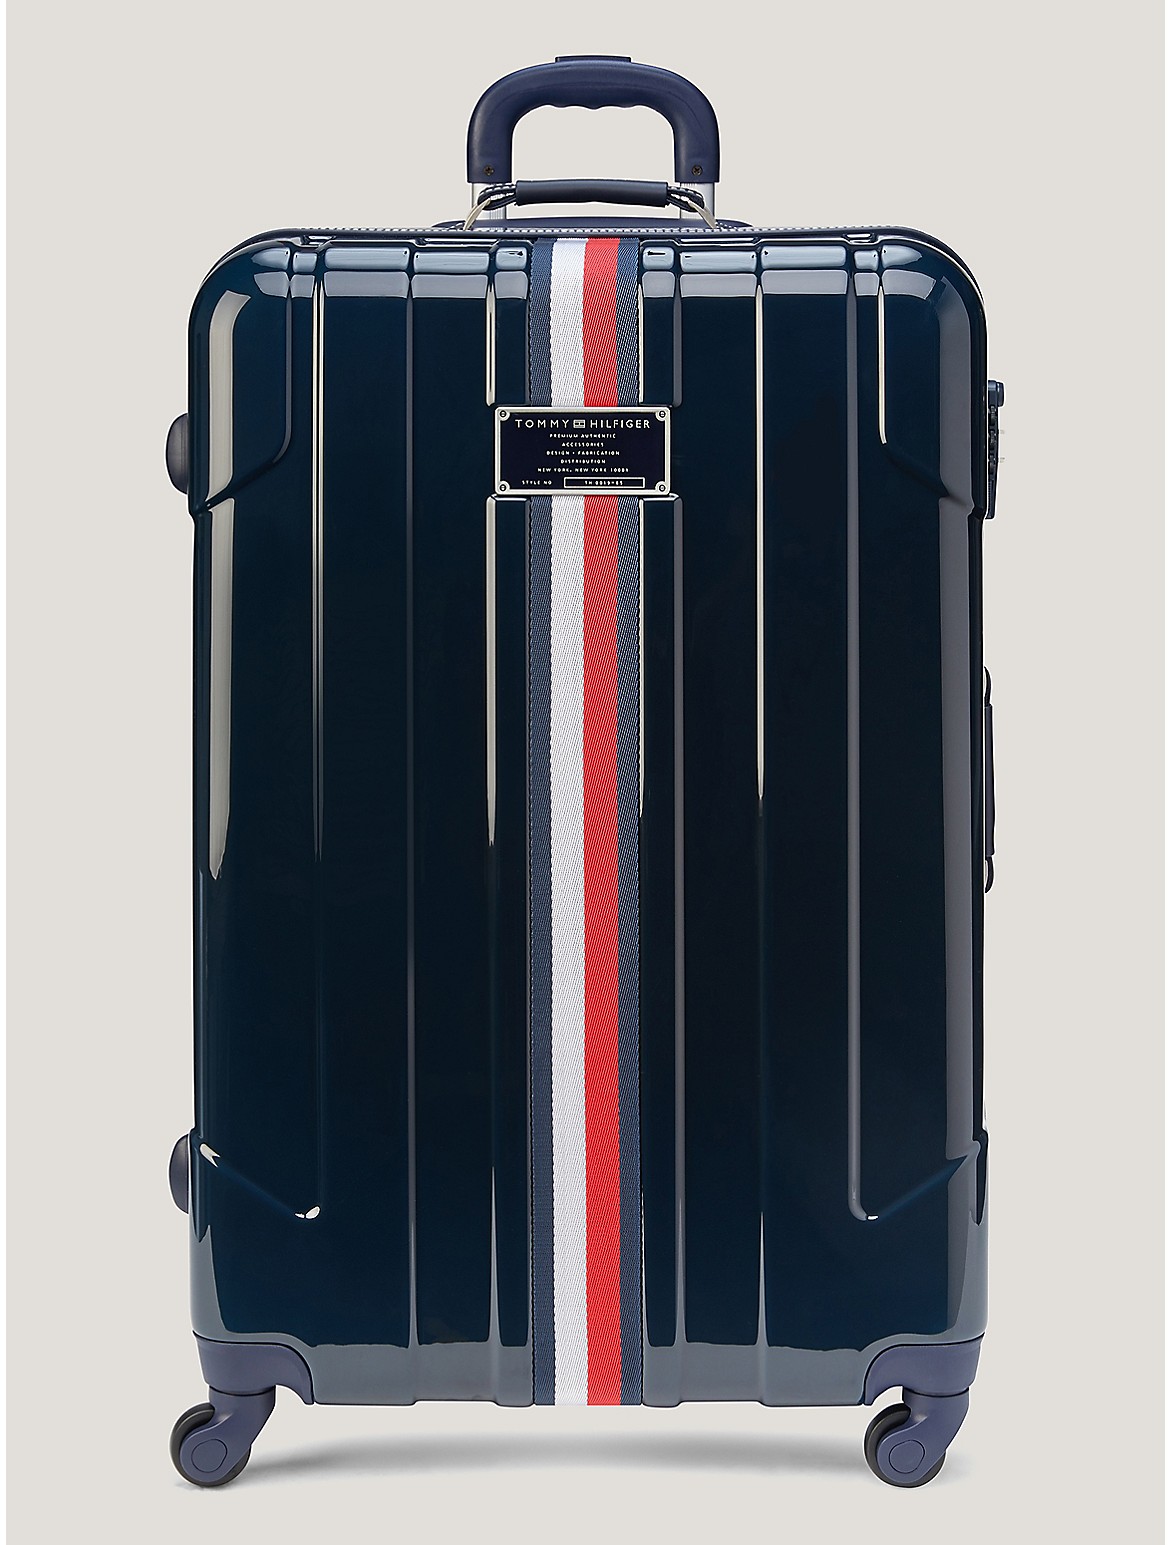 Tommy Hilfiger 28 Hardcase Spinner Luggage